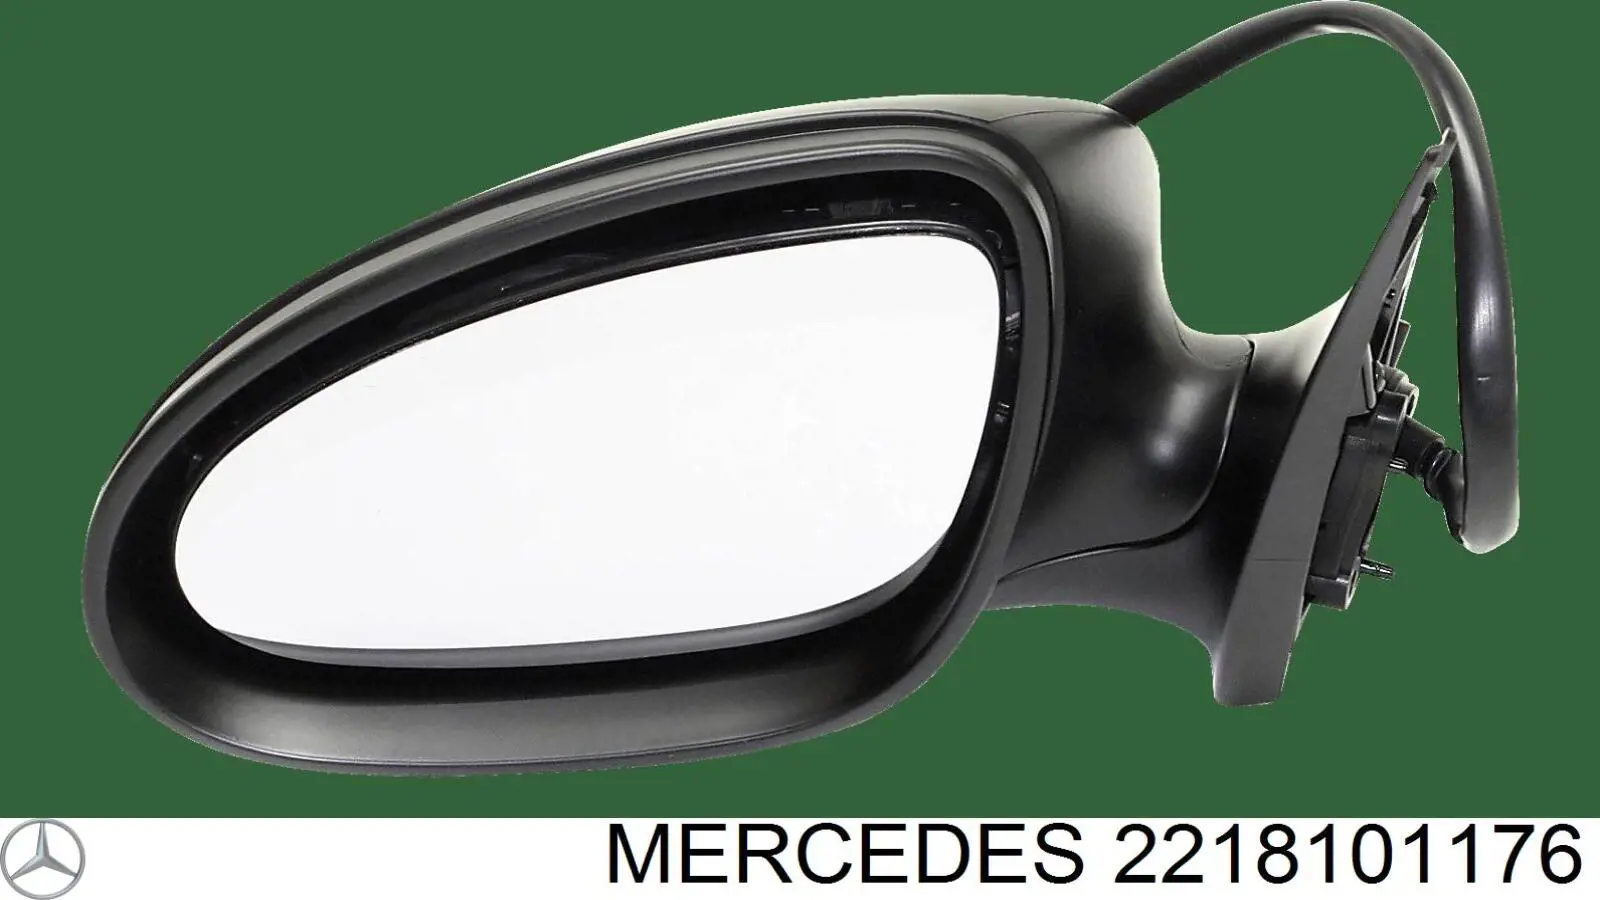 2218101176 Mercedes espelho de retrovisão esquerdo